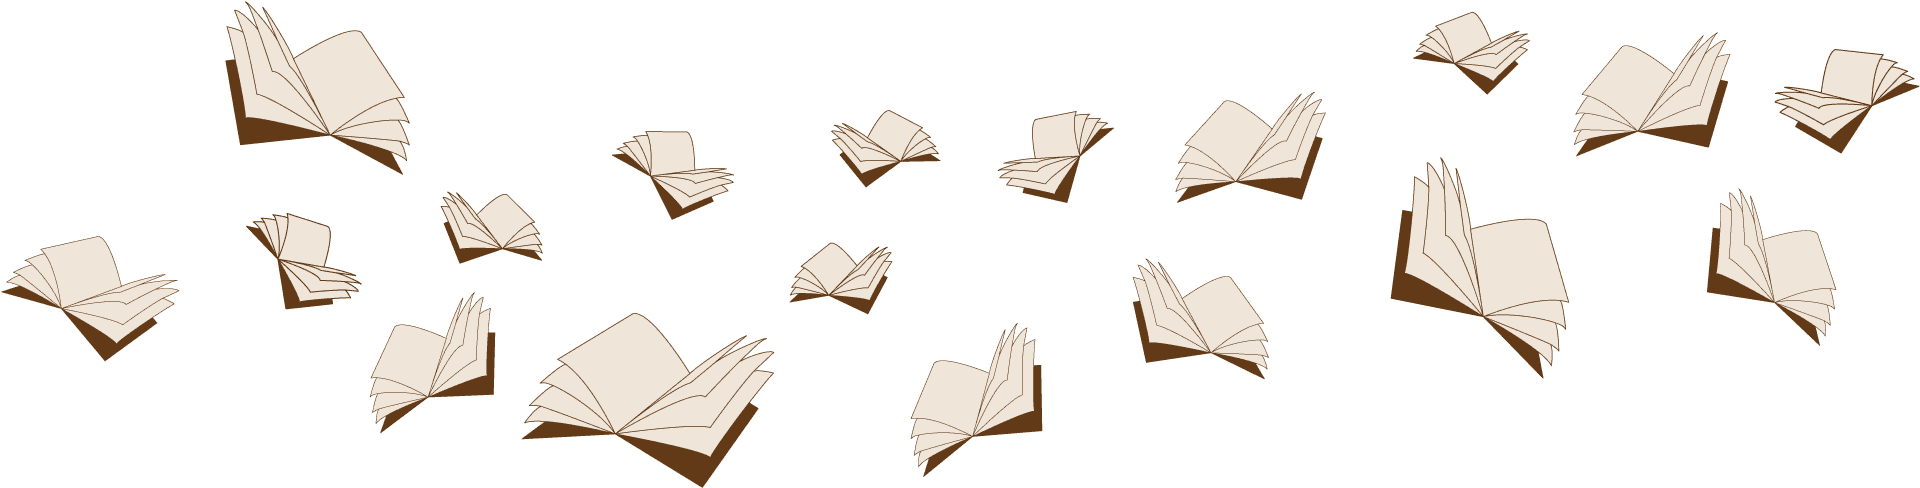 flying-books